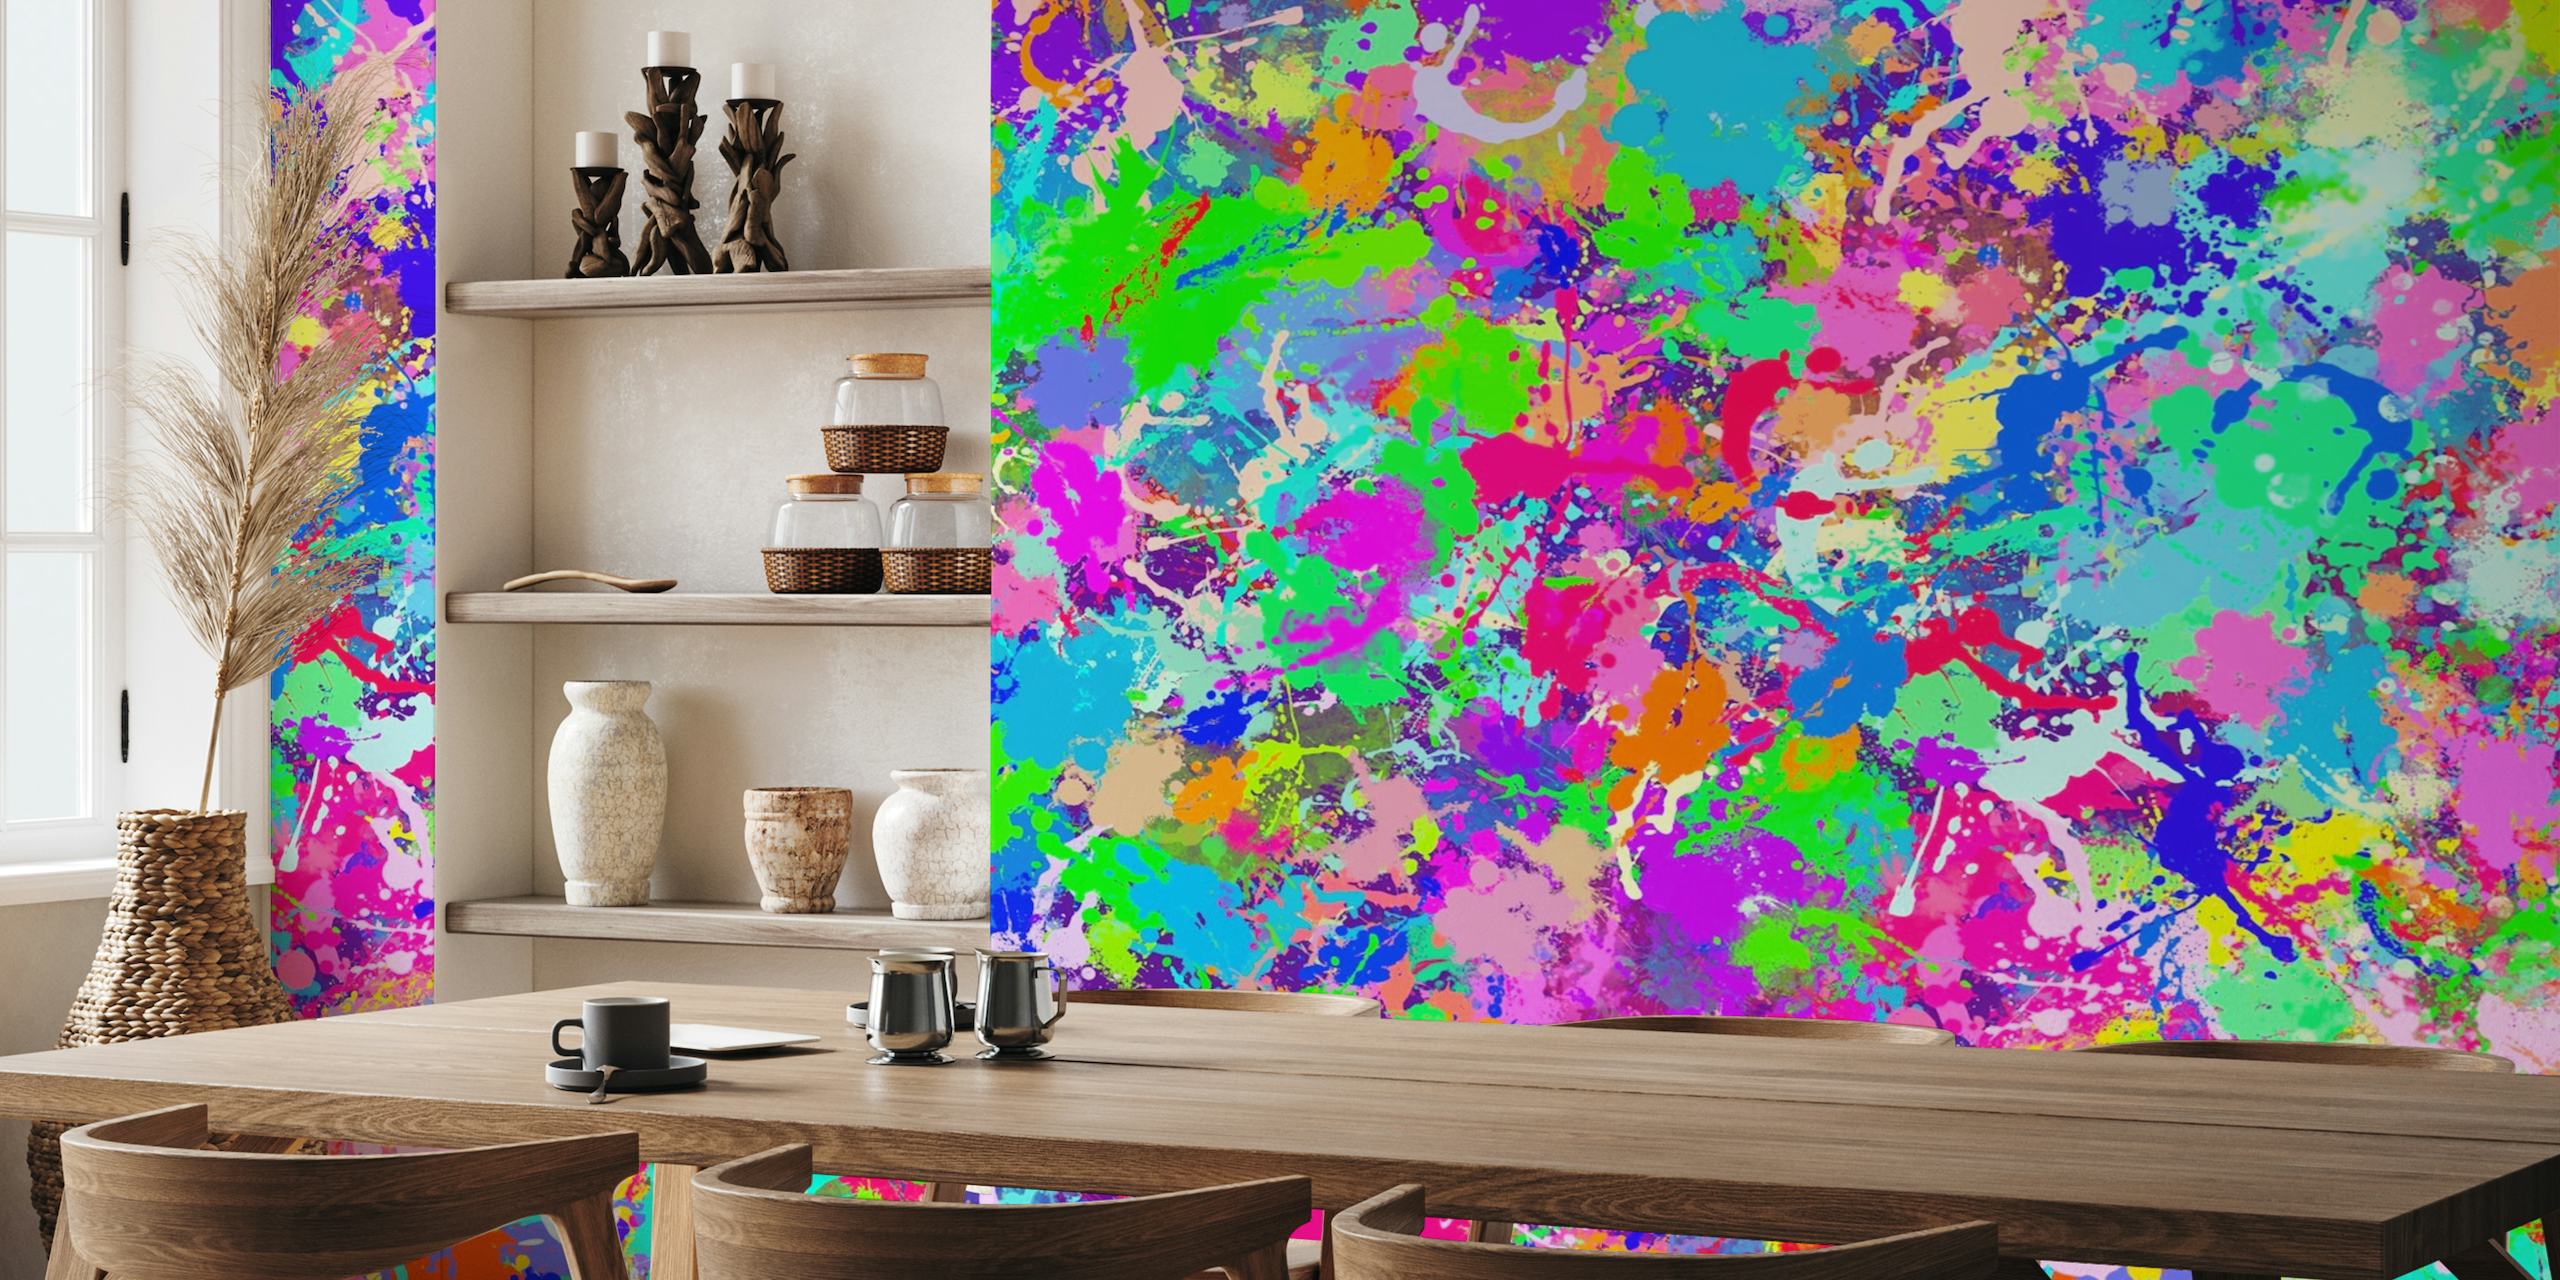 Farverigt abstrakt malingsplash vægmaleri med levende nuancer af pink, blå, grøn og gul